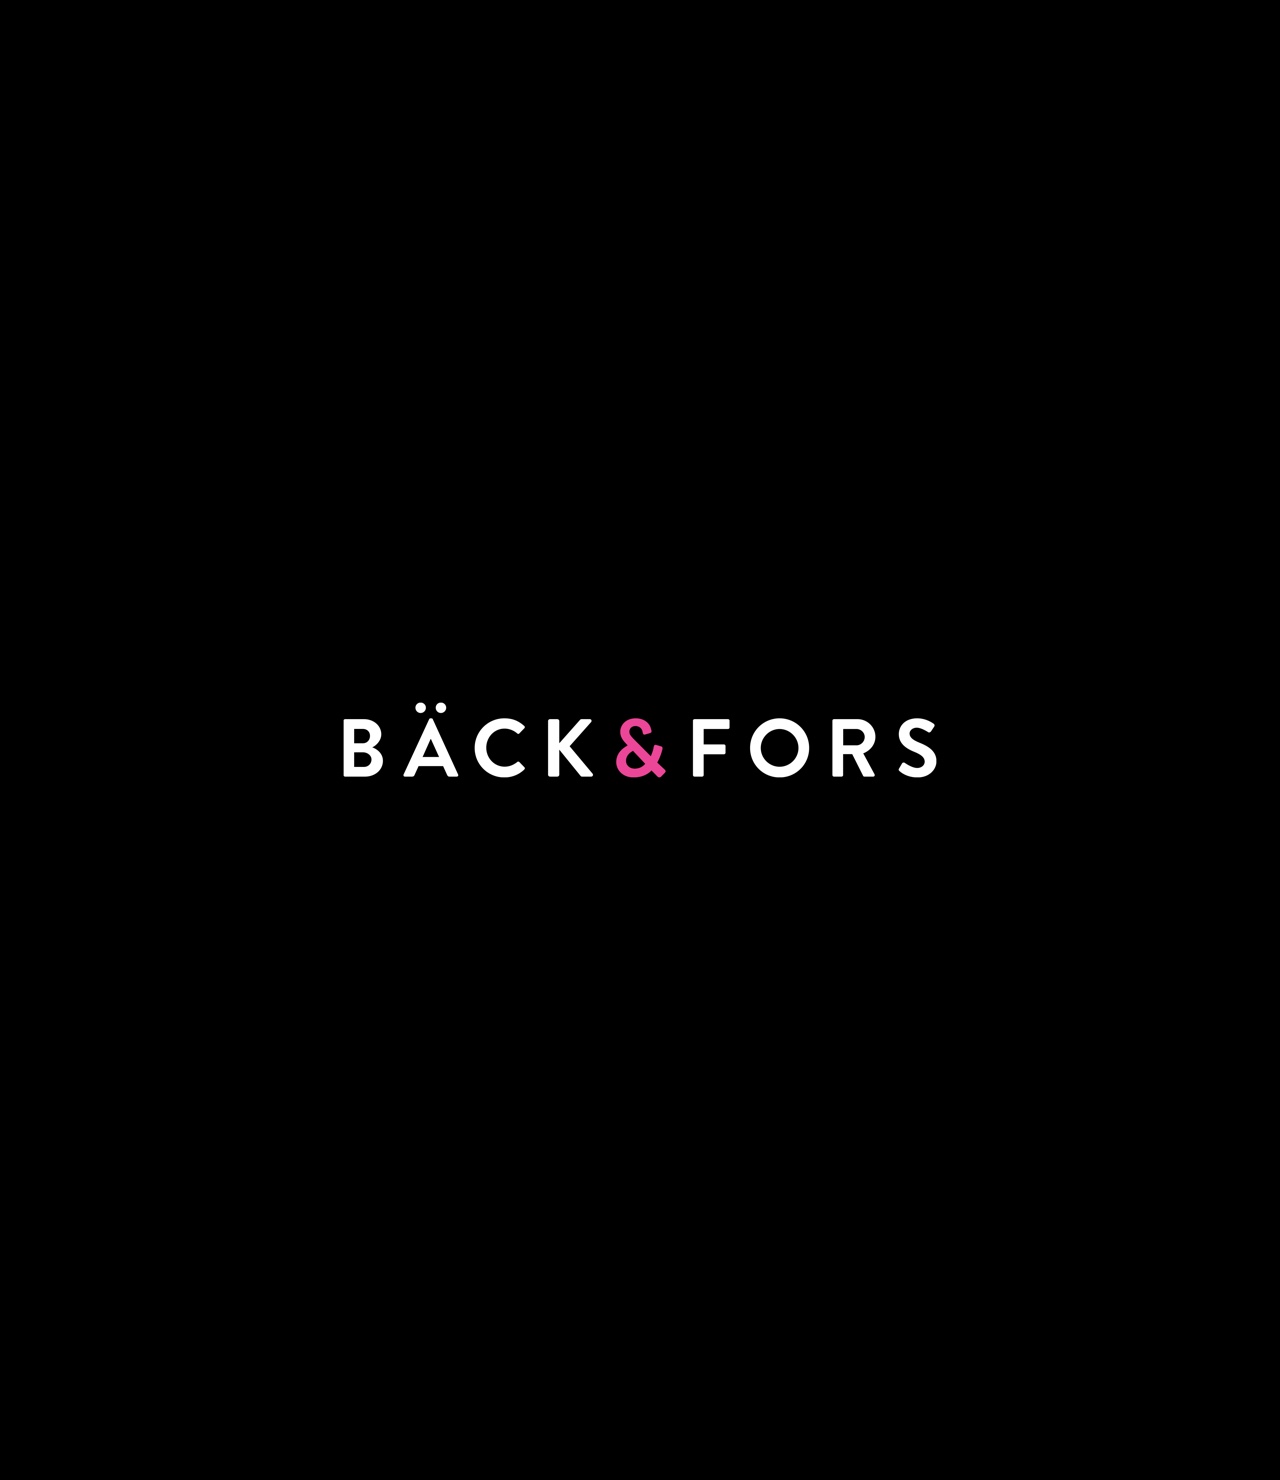 Logotyp förslag Bäck & Fors